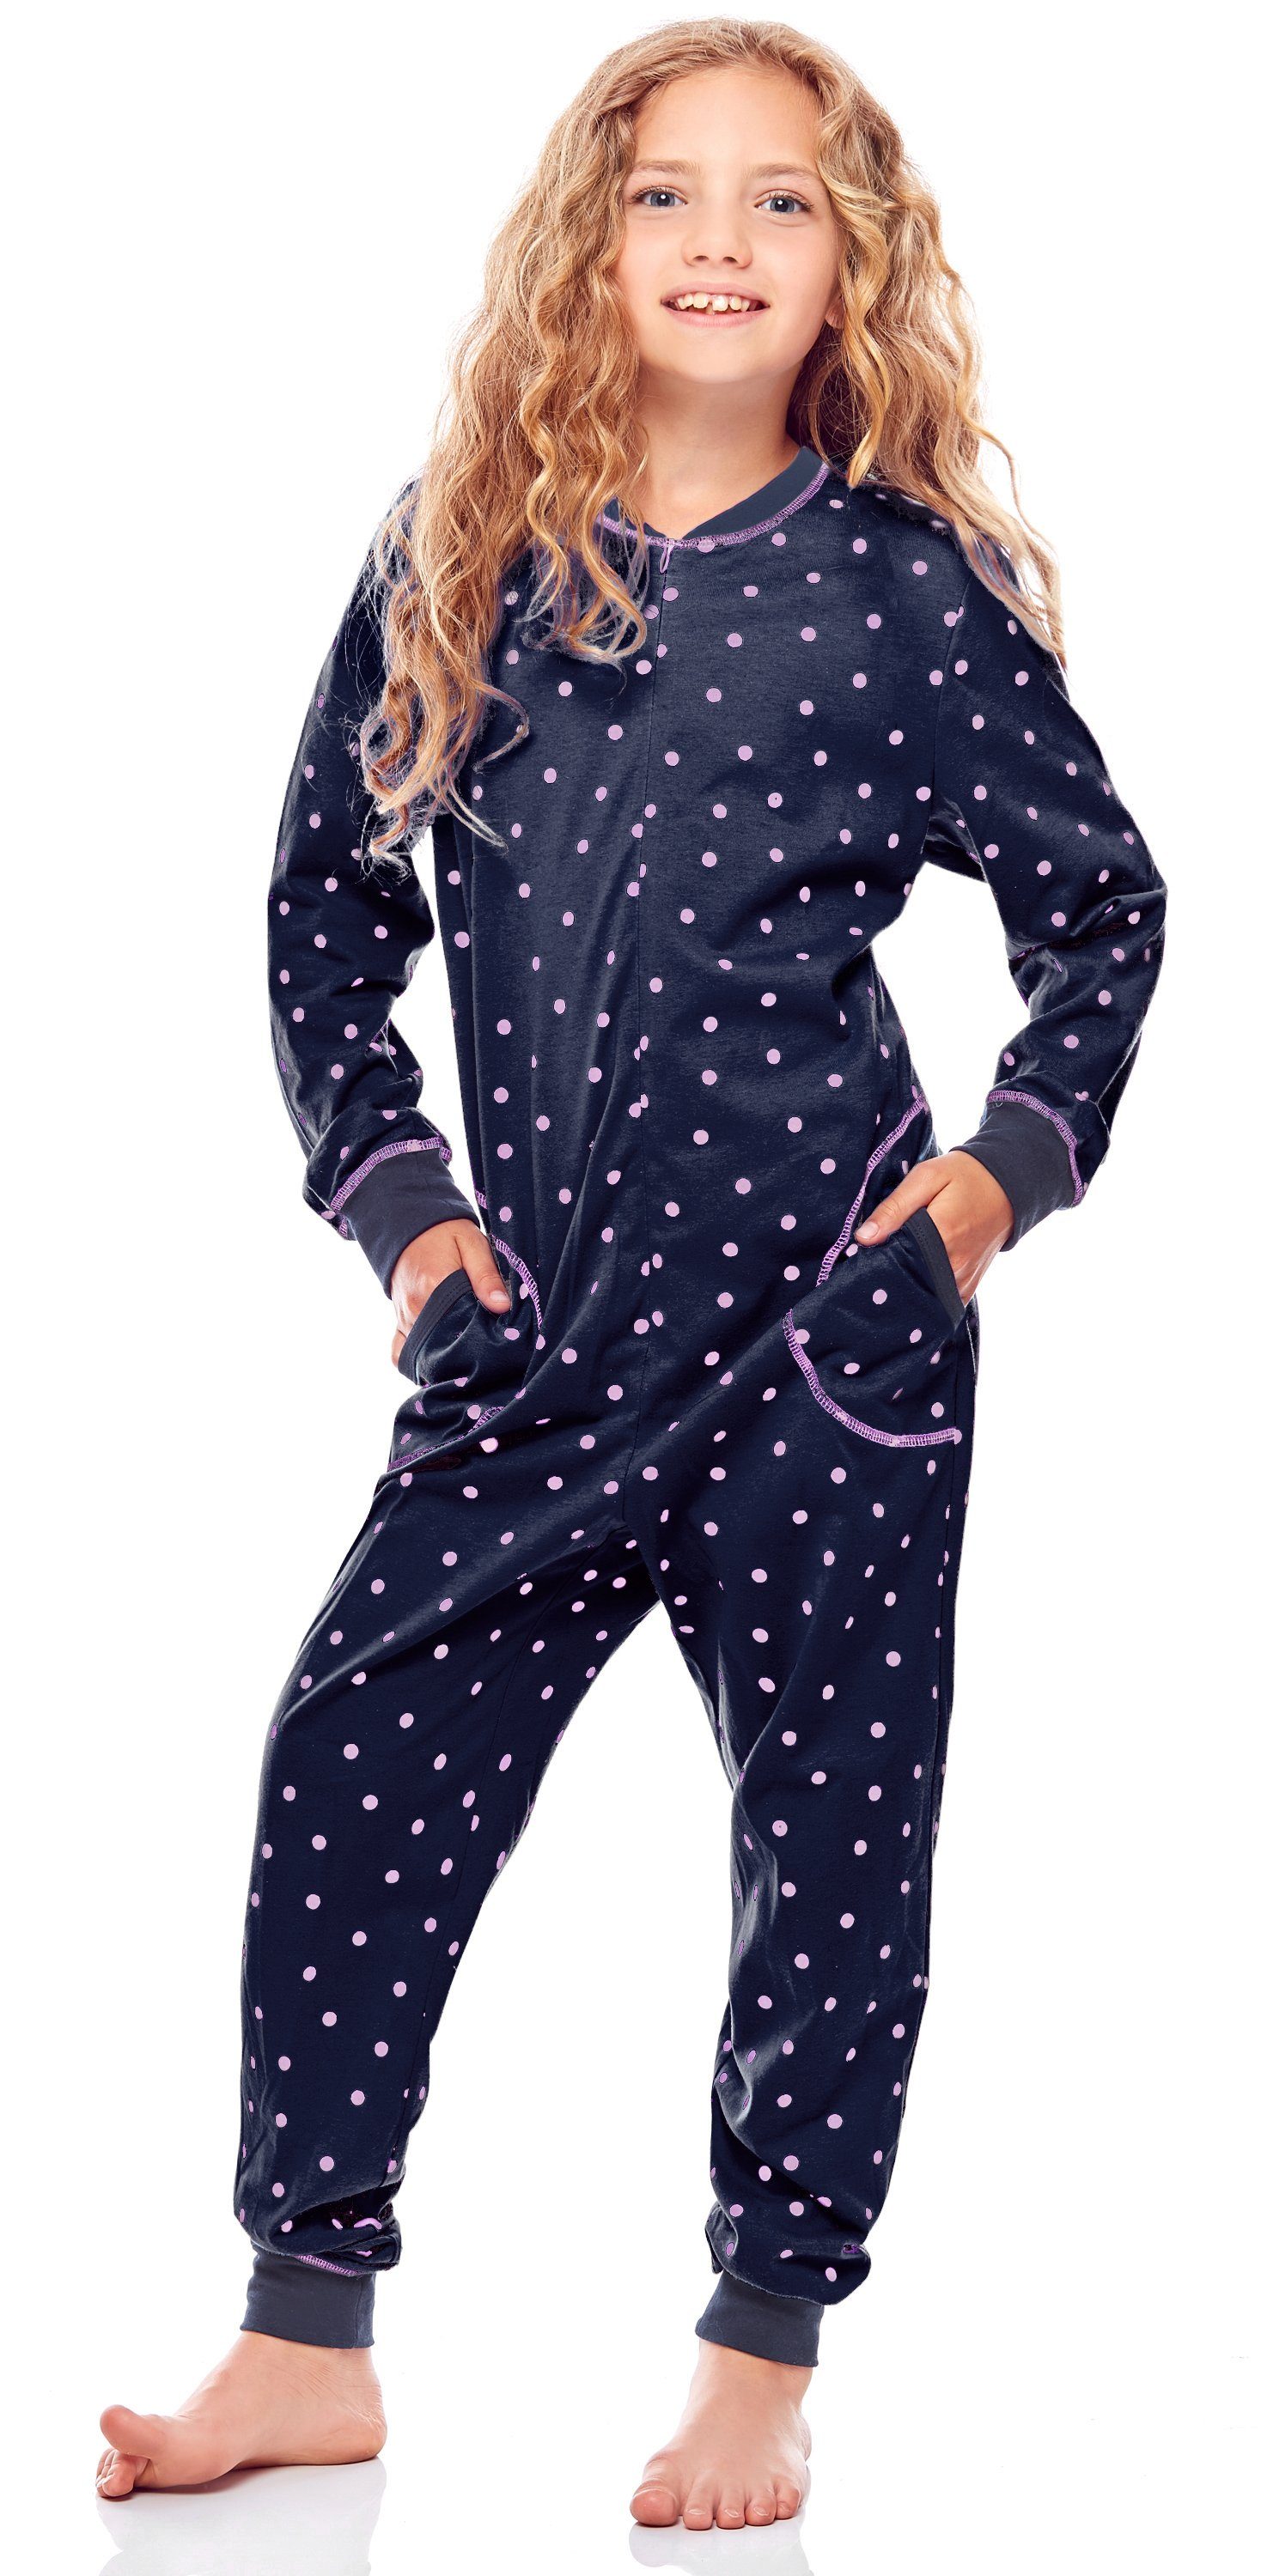 Merry Style Schlafanzug Mädchen Schlafanzug Jumpsuit MS10-186 Marineblau Rosa Punkte